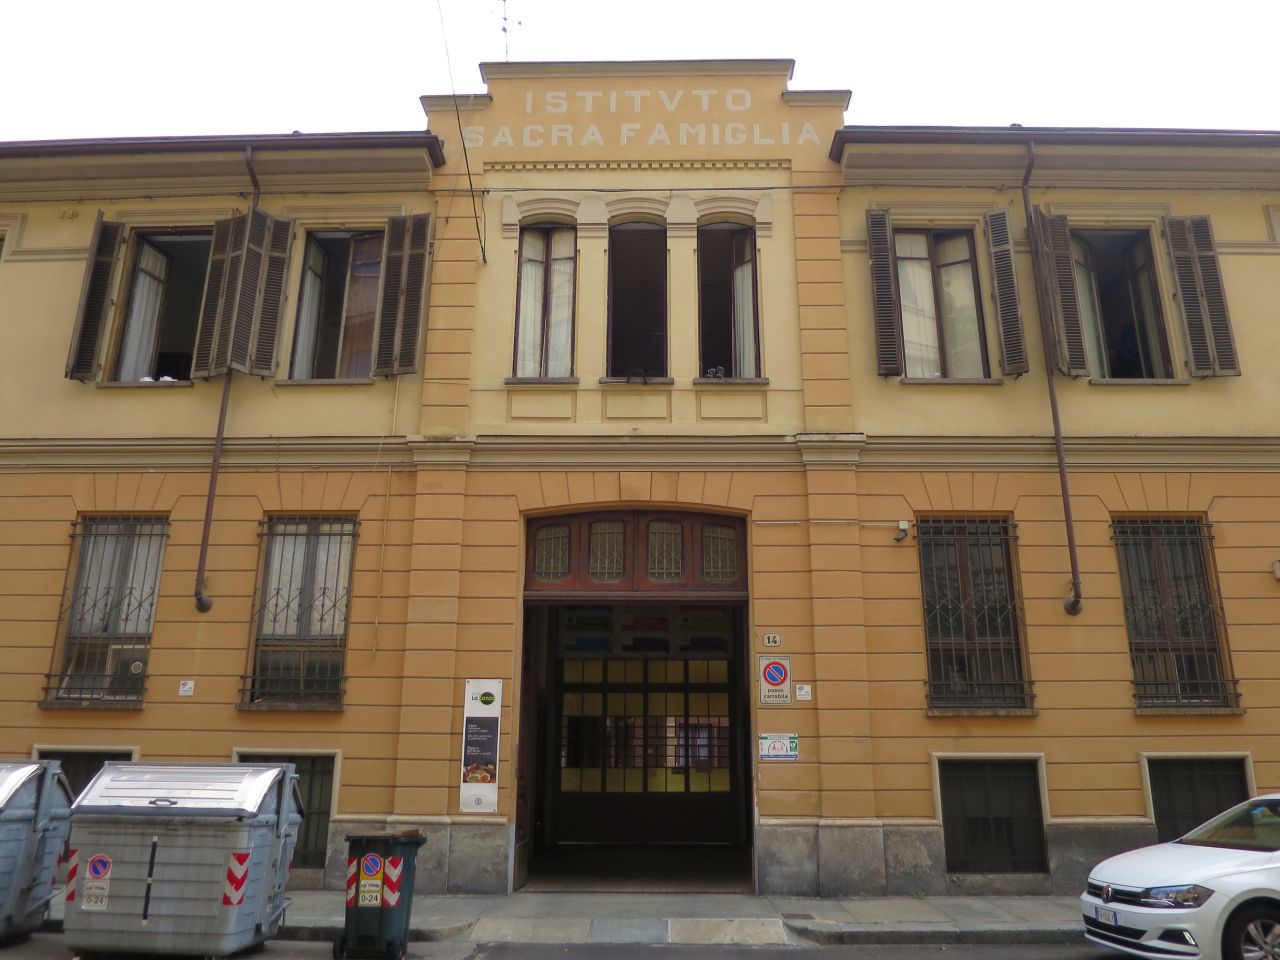 Fondazione Istituto della Sacra Famiglia (istituto religioso) - Torino (TO) 